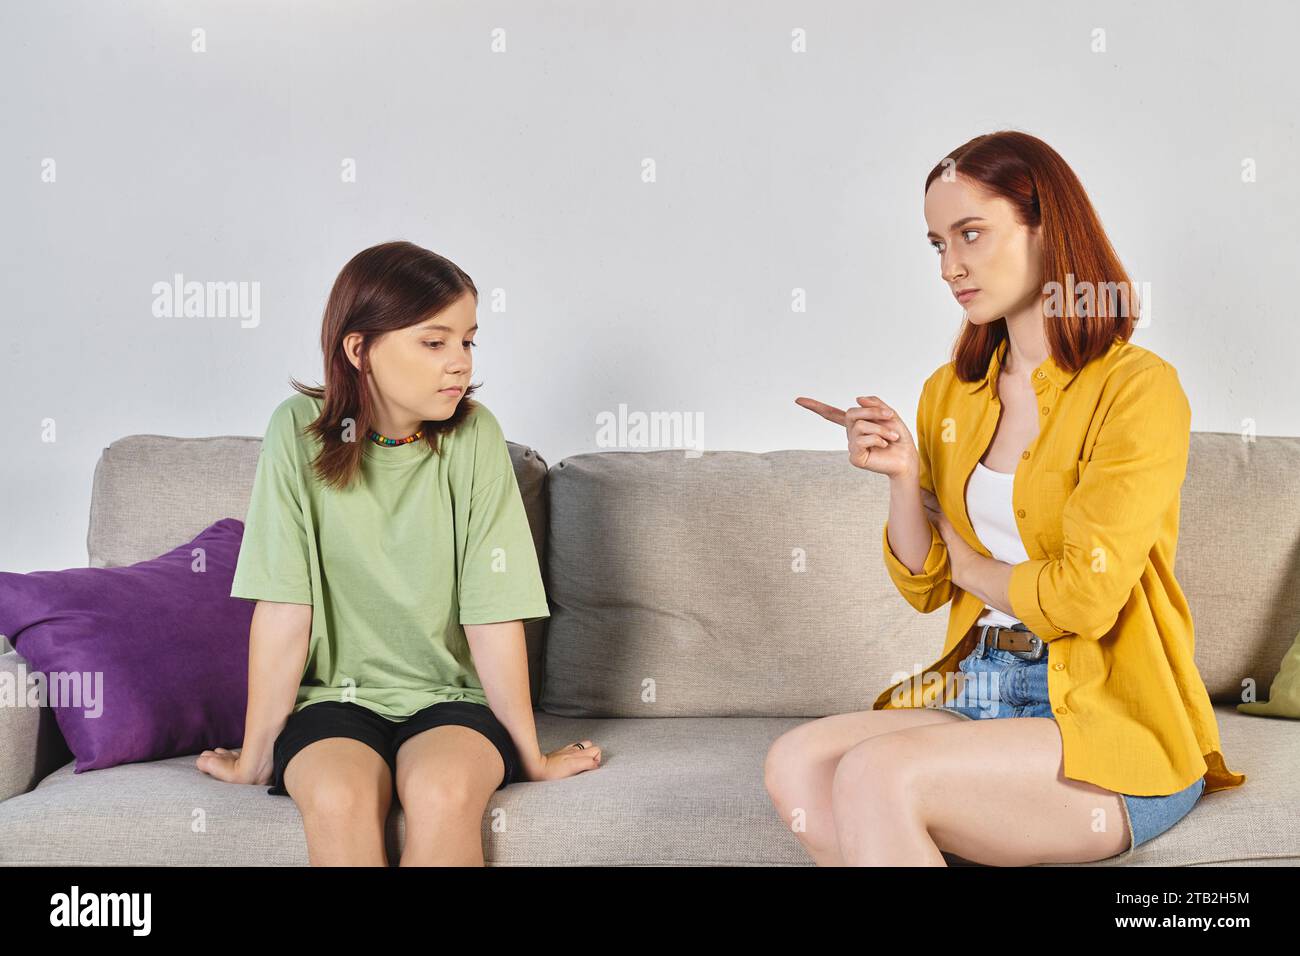 Ernsthaftes Gespräch, strenge Mutter zeigt auf frustrierte Teenager-Tochter, die im Wohnzimmer auf der Couch sitzt Stockfoto